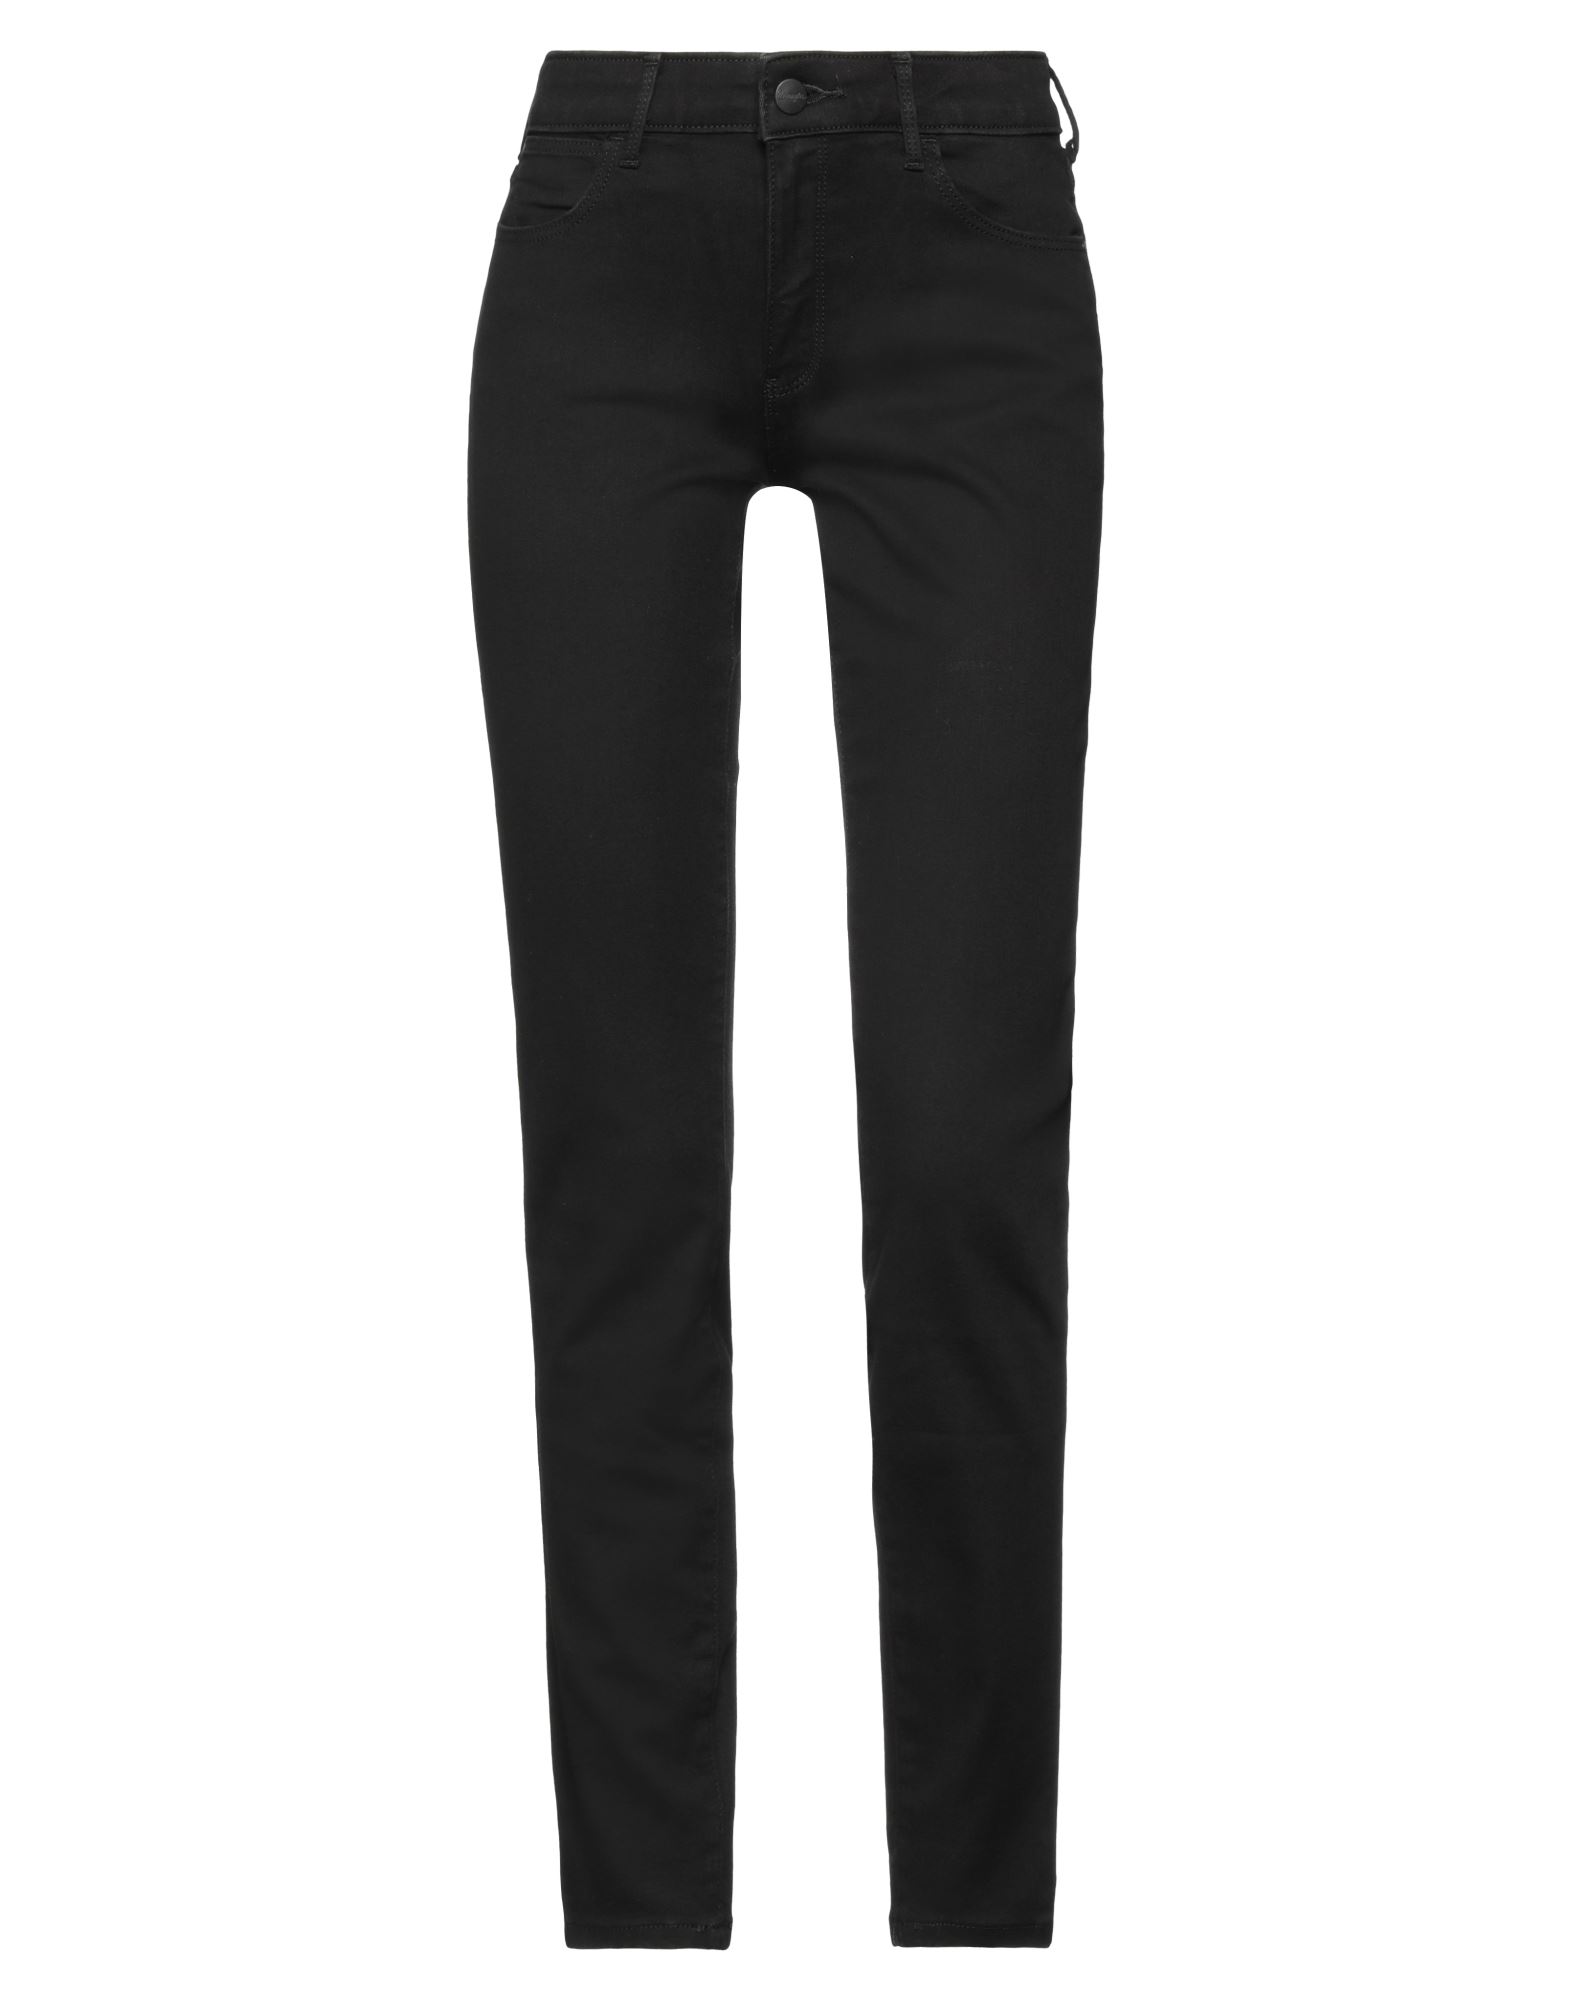 Shop Wrangler Woman Jeans Black Size 26w-32l Cotton, Polyester, Elastane